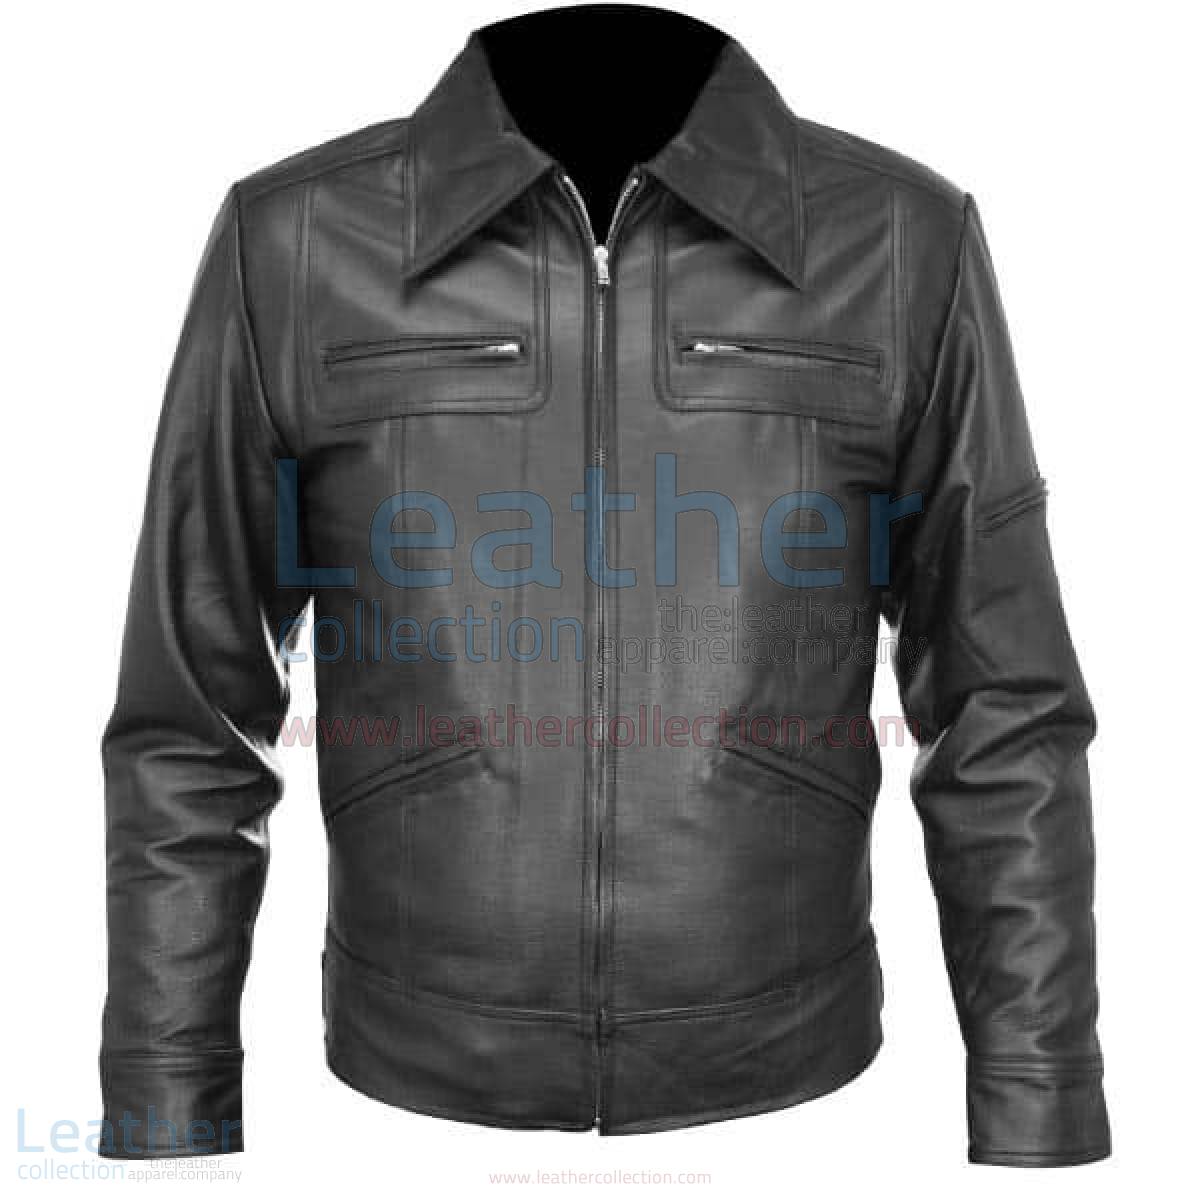 leather jacket black shirt